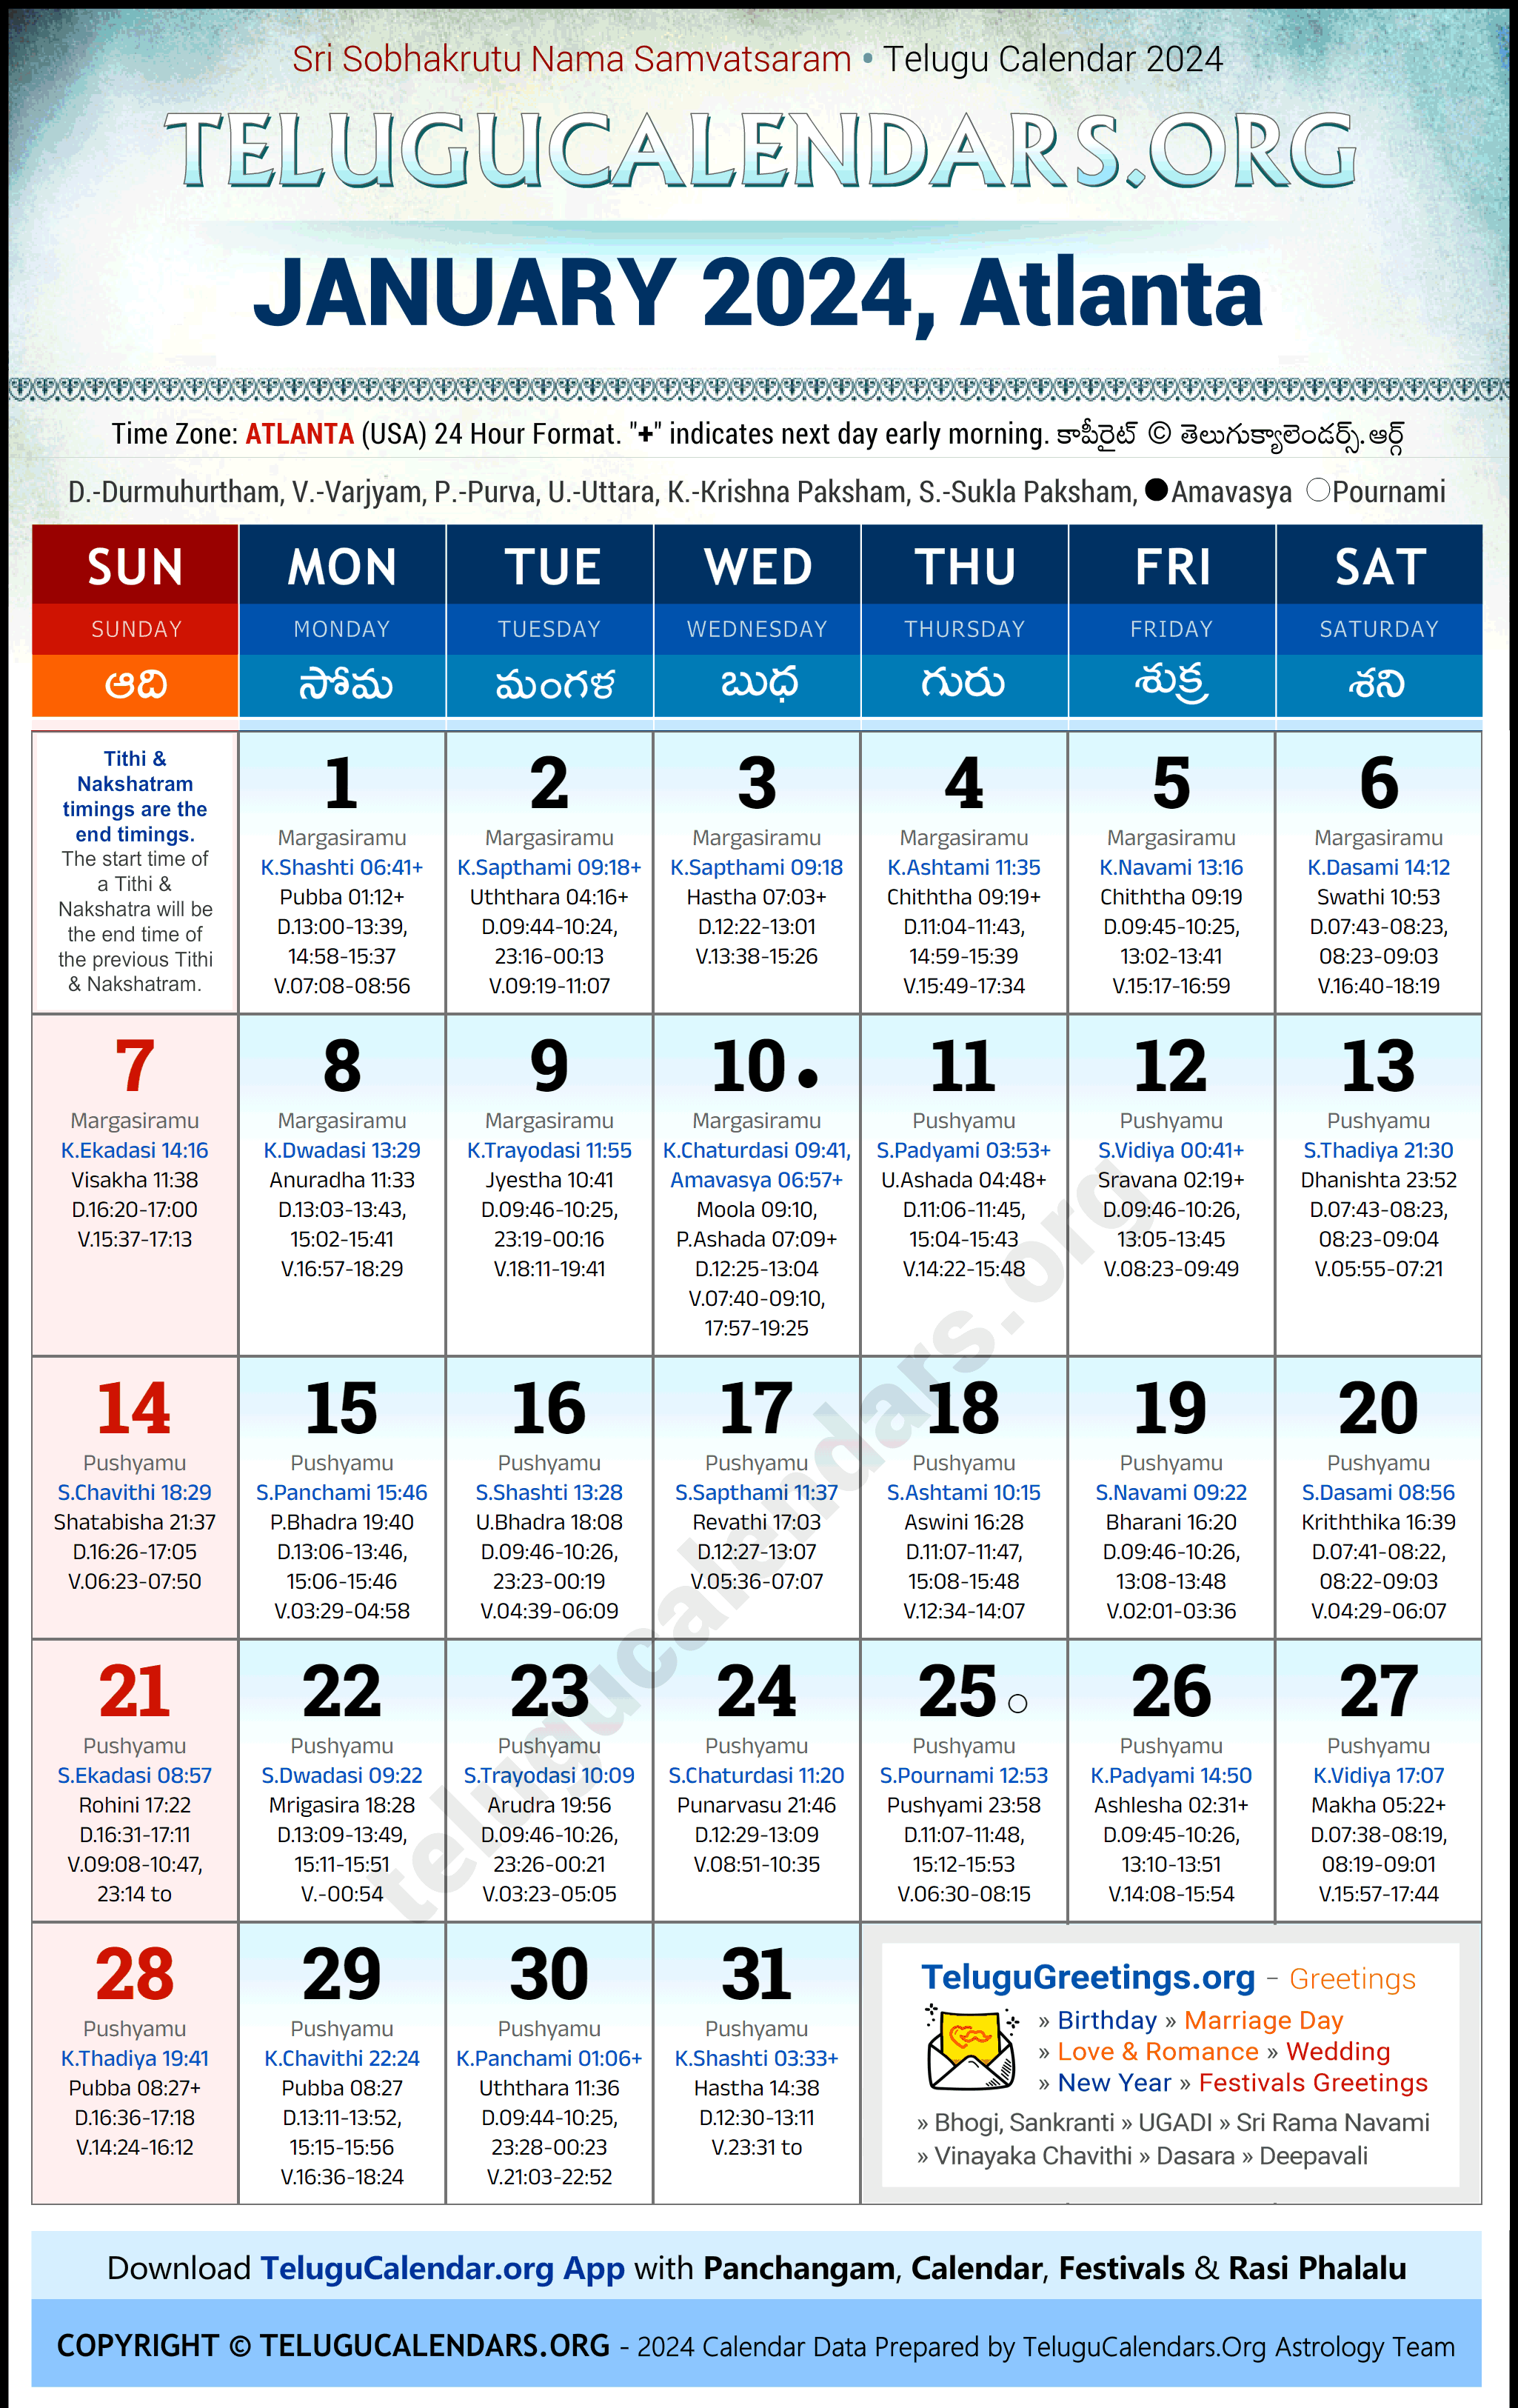 Telugu Calendar 2024 January Festivals for Atlanta